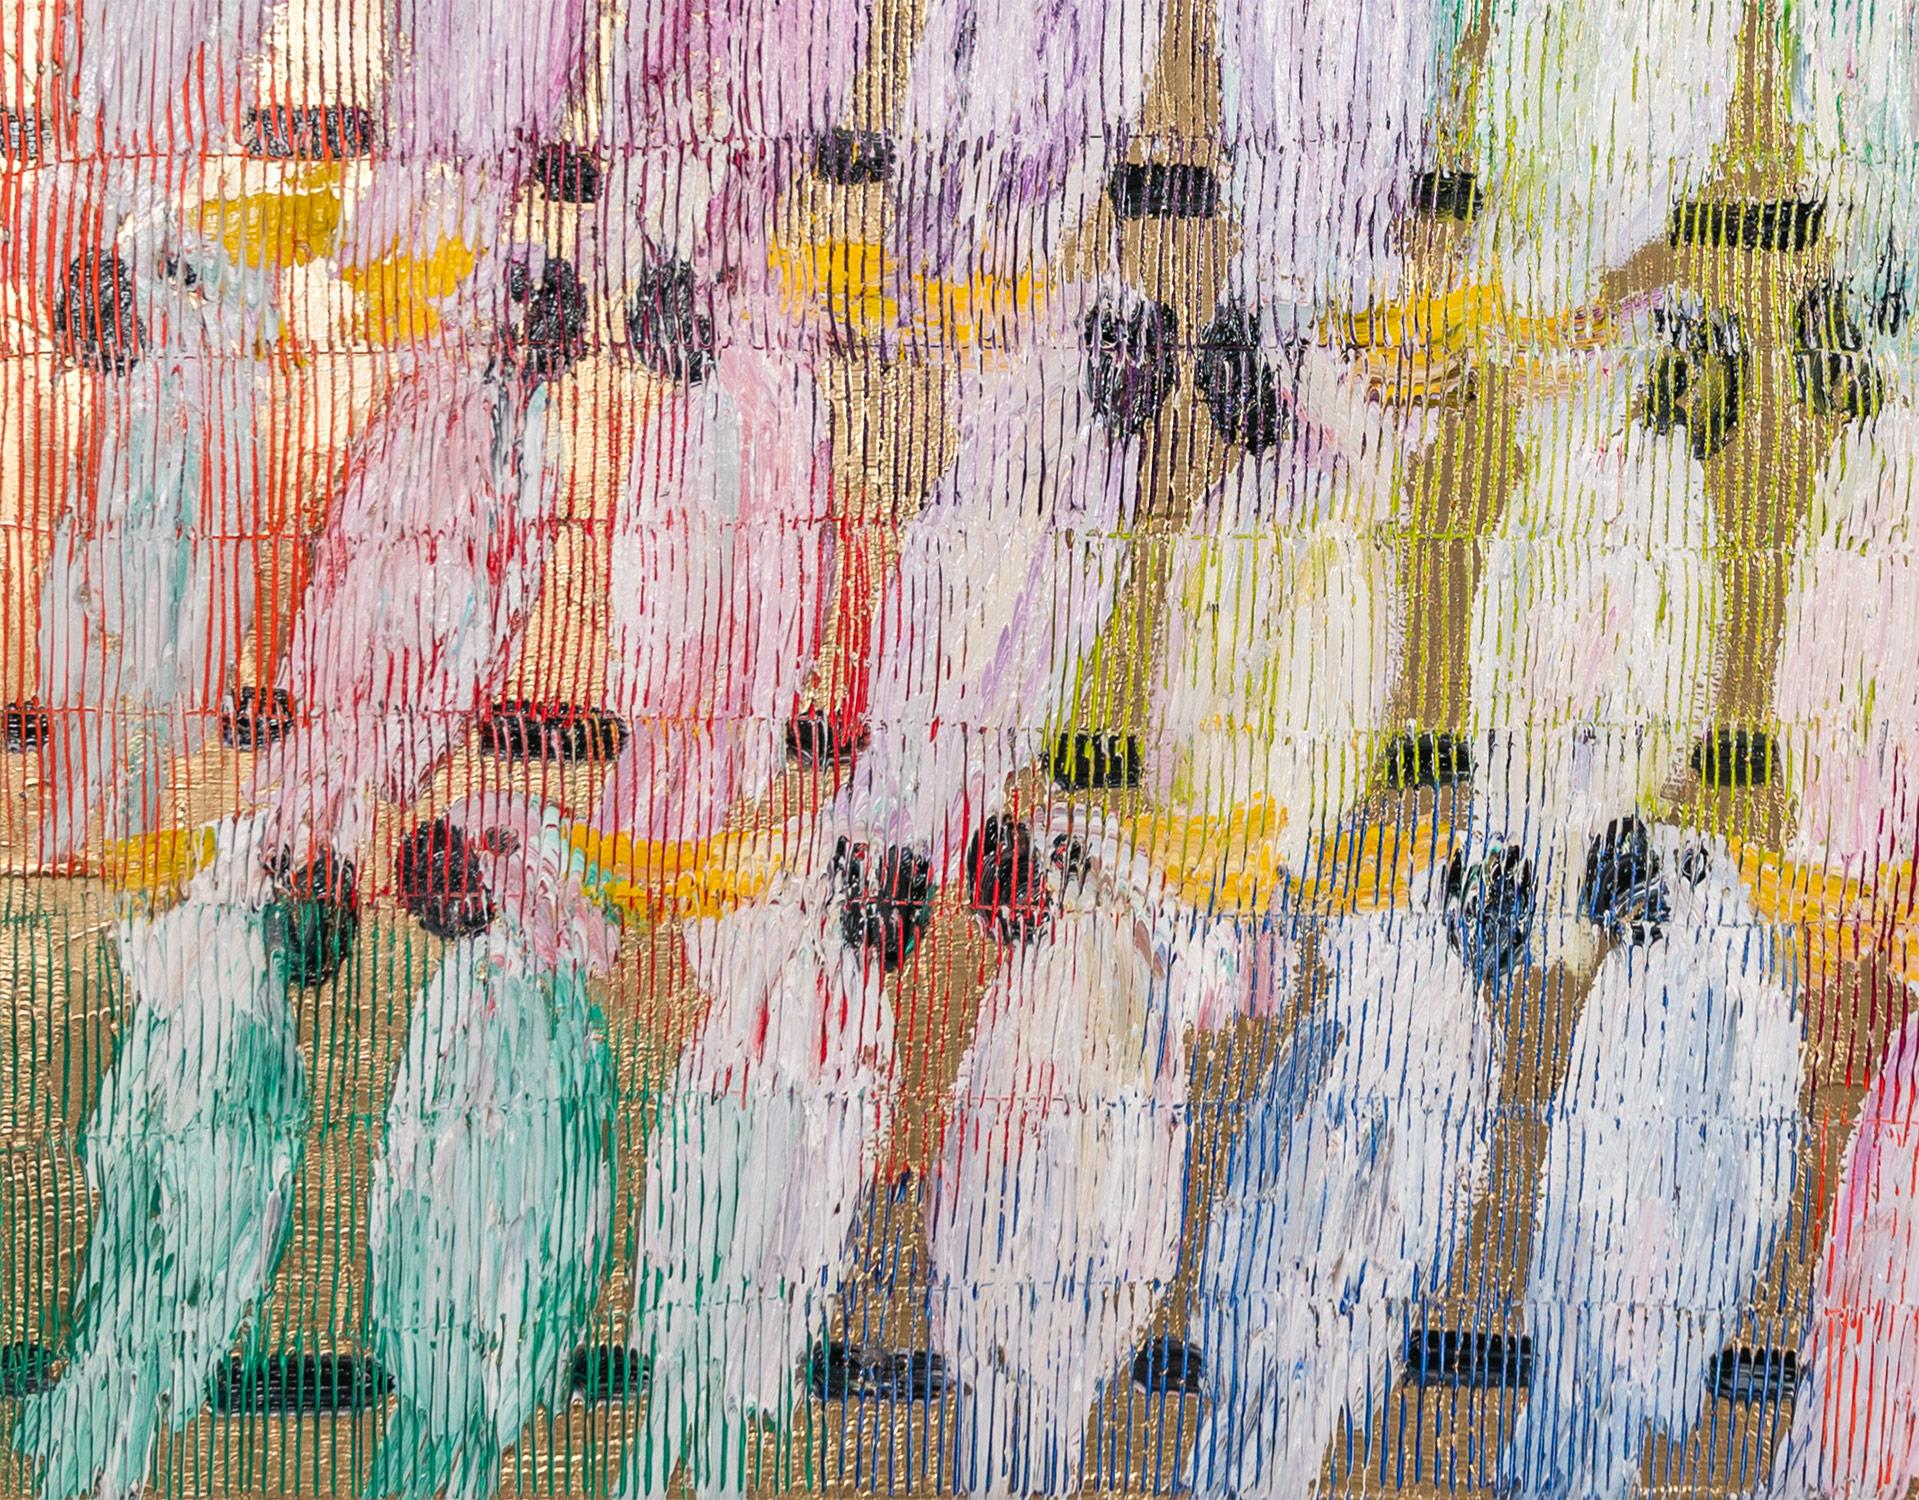 Eine wunderbare Komposition eines von Slonems ikonischsten Motiven: Kakadus. Der dicke Farbauftrag ist deutlich zu erkennen, wenn er Schicht um Schicht mehrfarbiger Ölfarbe auf einen goldfarbenen Hintergrund aufträgt. Dann zeichnet er diese